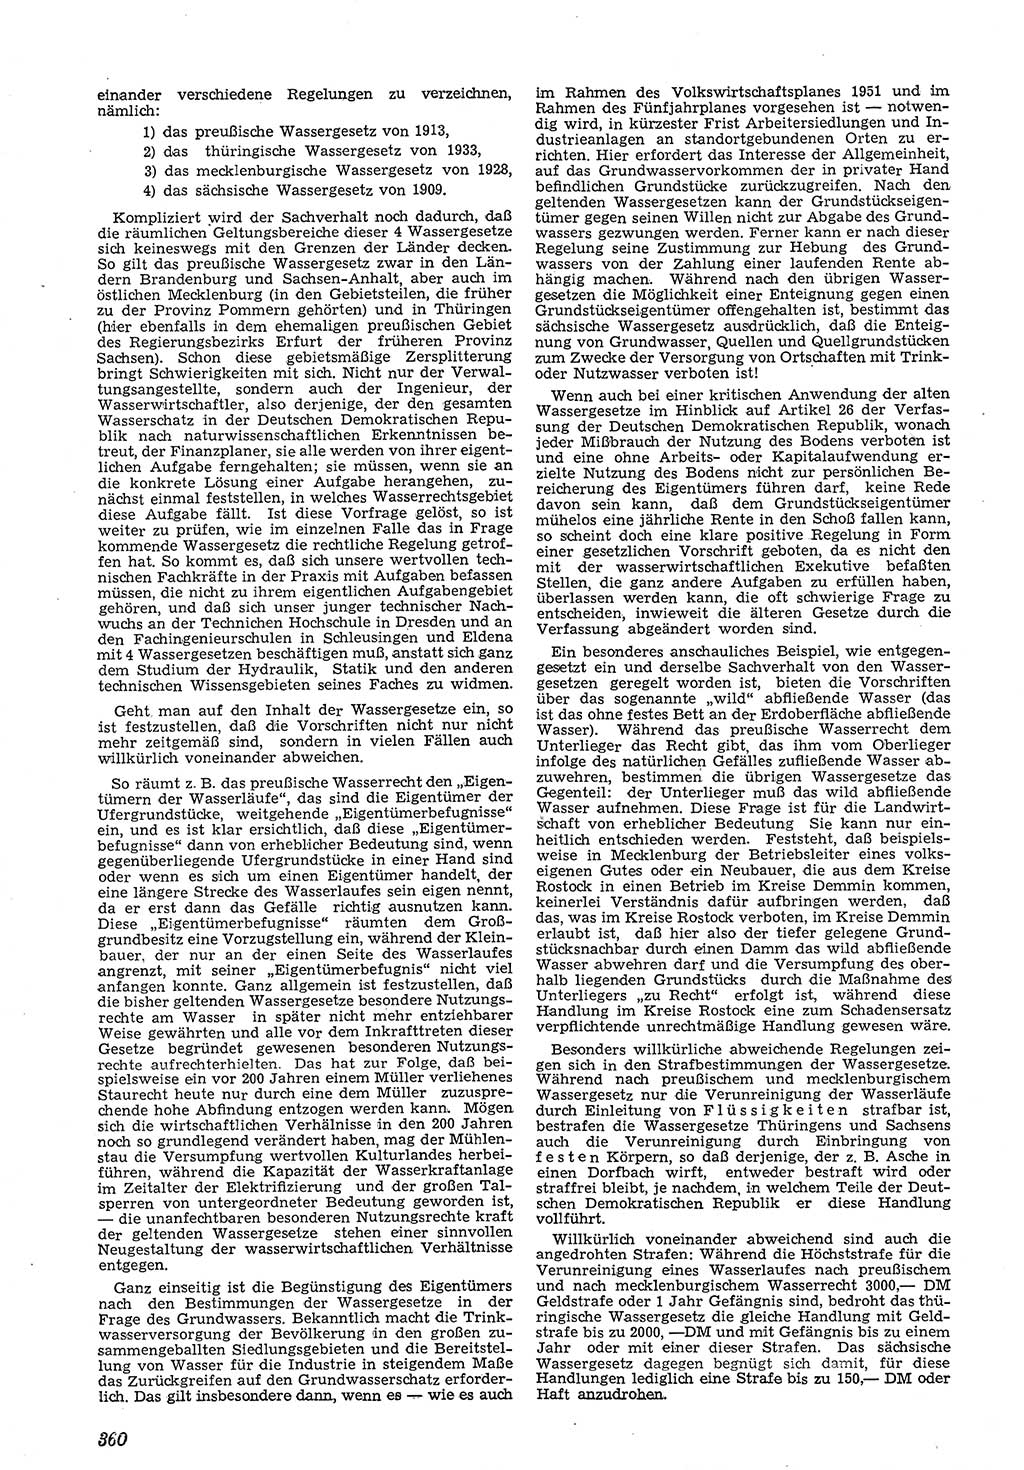 Neue Justiz (NJ), Zeitschrift für Recht und Rechtswissenschaft [Deutsche Demokratische Republik (DDR)], 5. Jahrgang 1951, Seite 360 (NJ DDR 1951, S. 360)